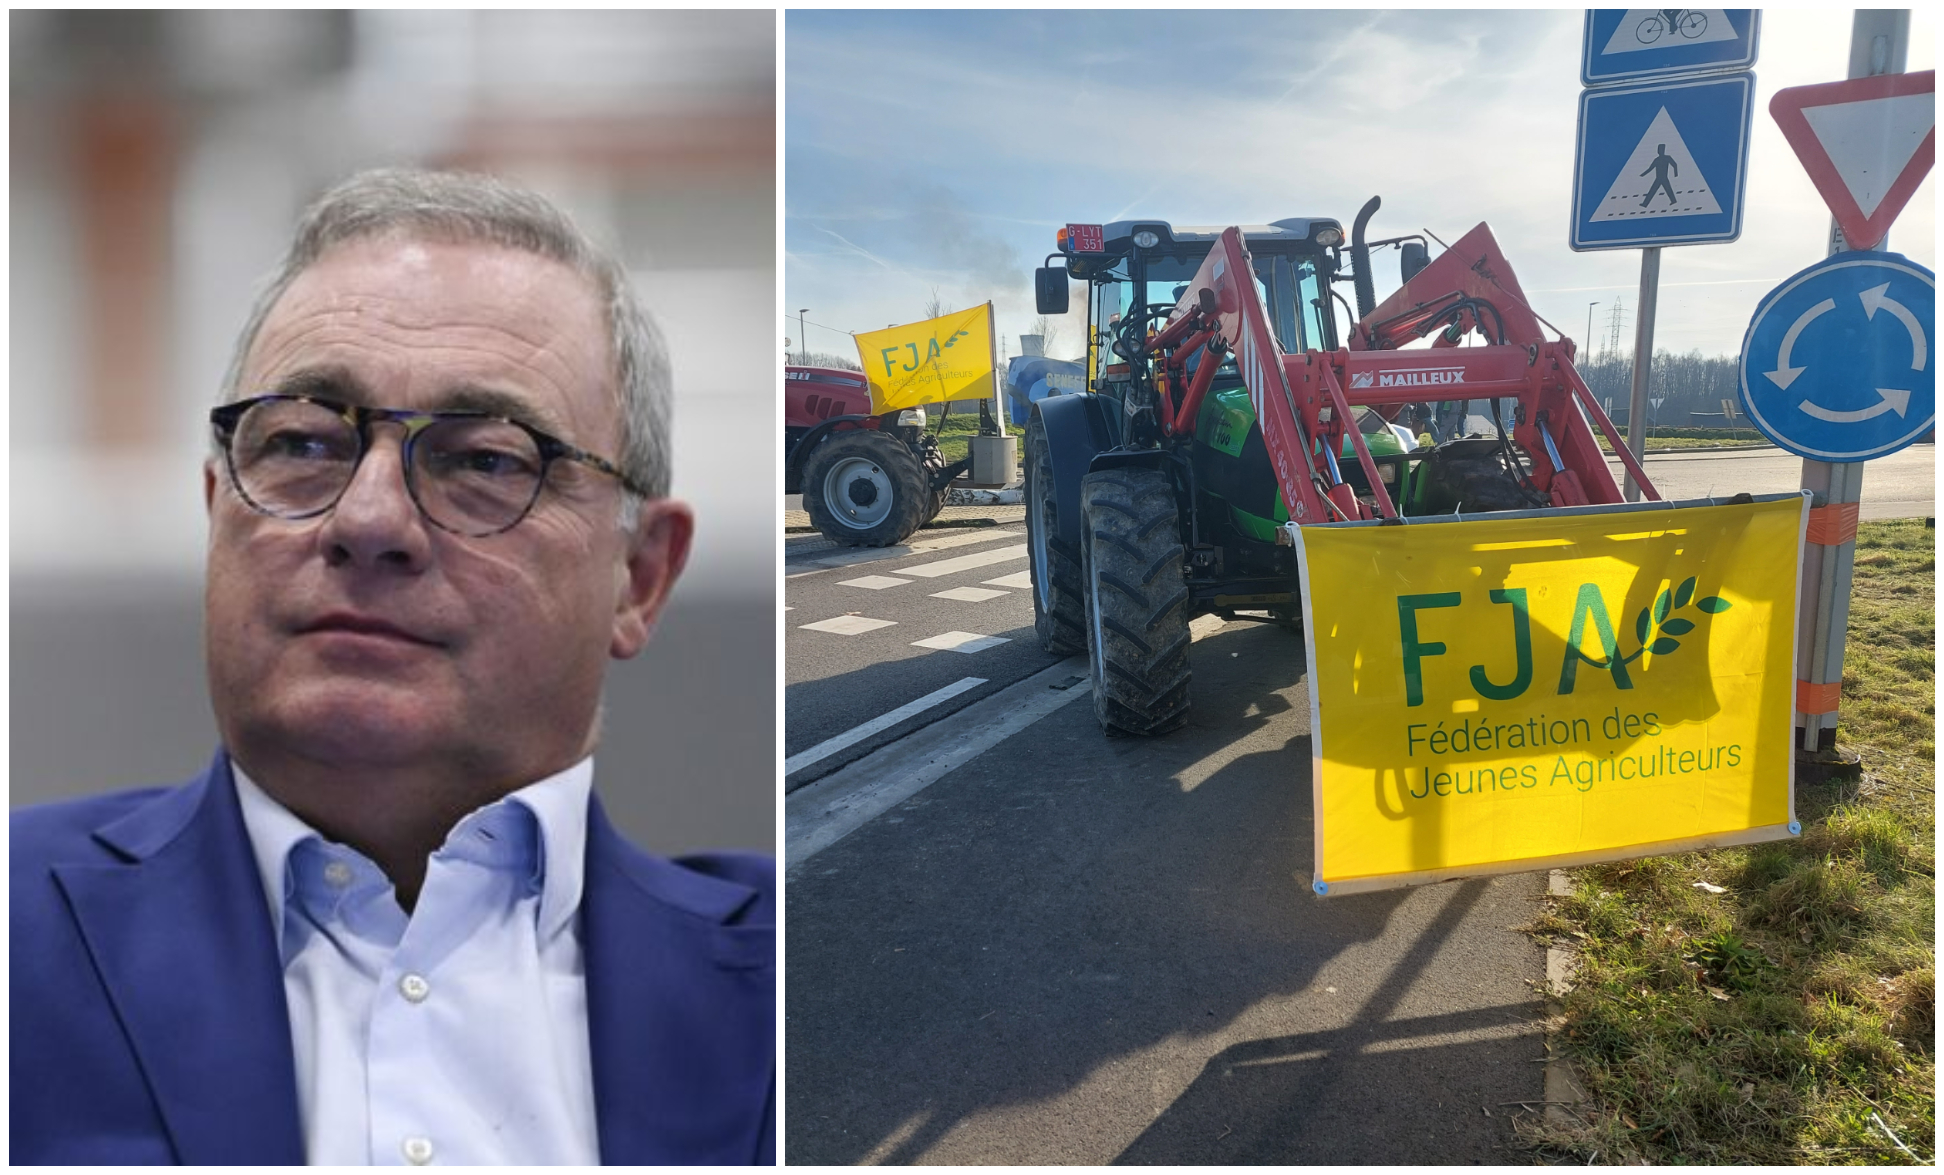 Des agriculteurs manifesteront dans le centre-ville de Liège ce